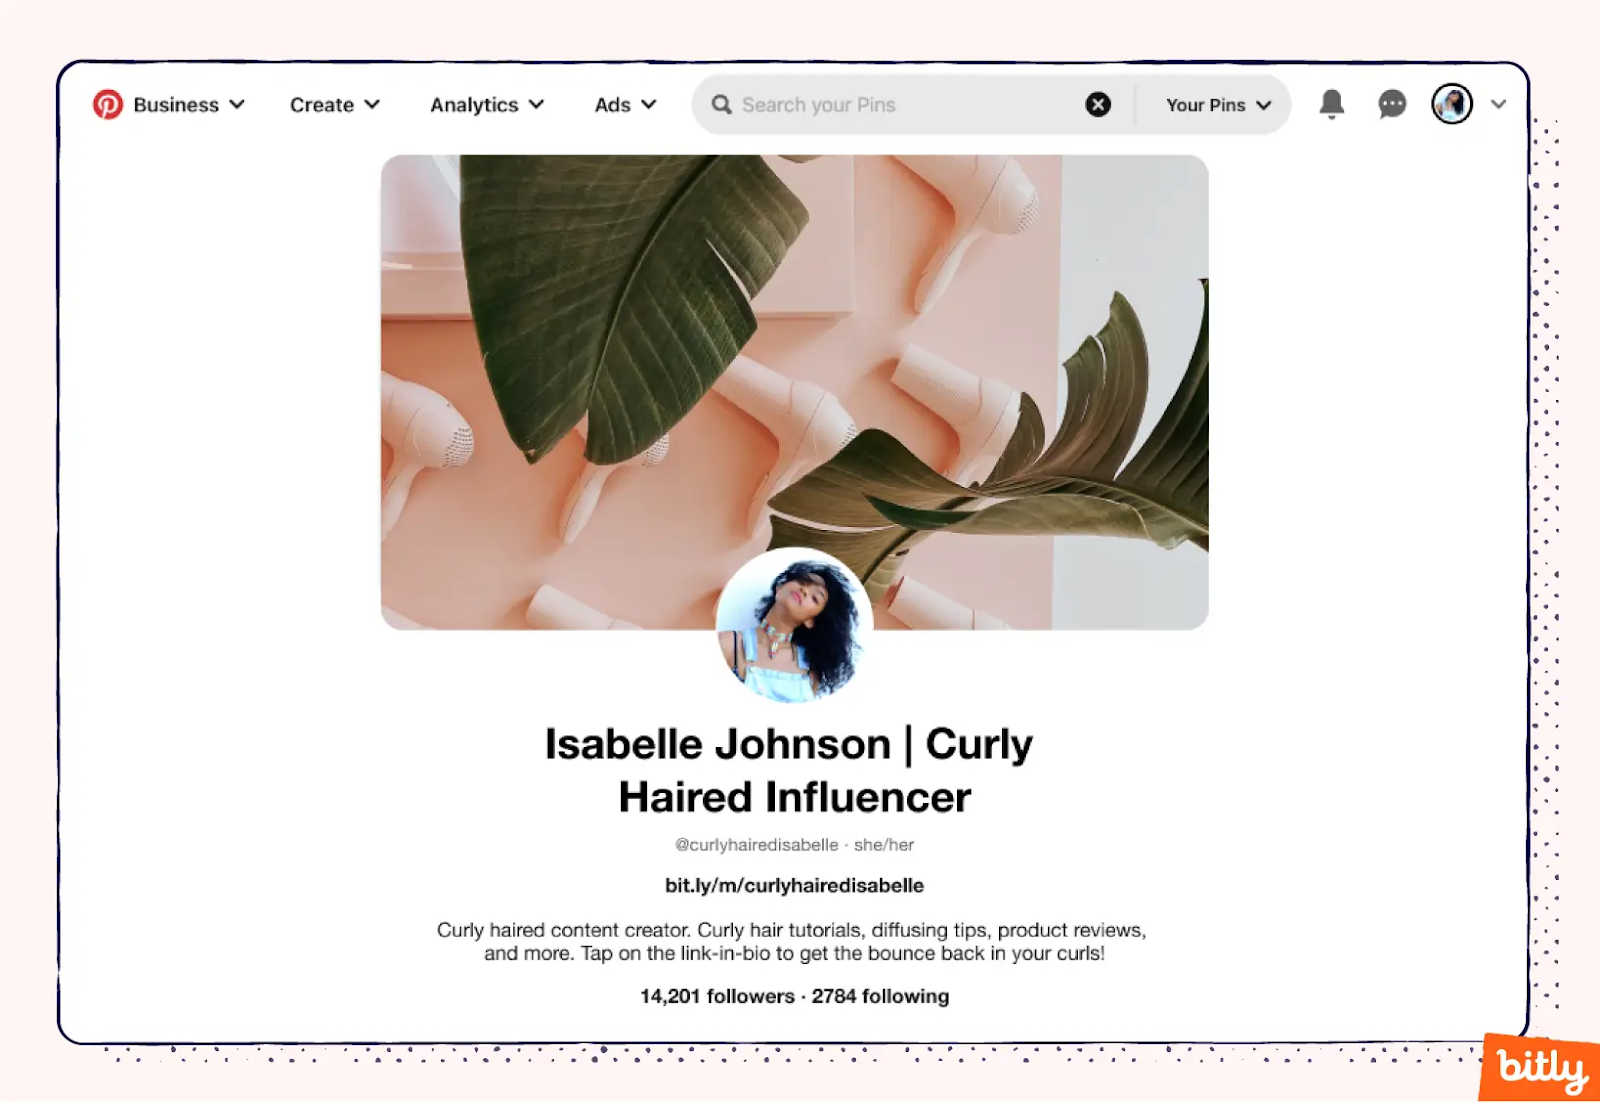 A screenshot of Isabelle Johnson's Pinterest bio